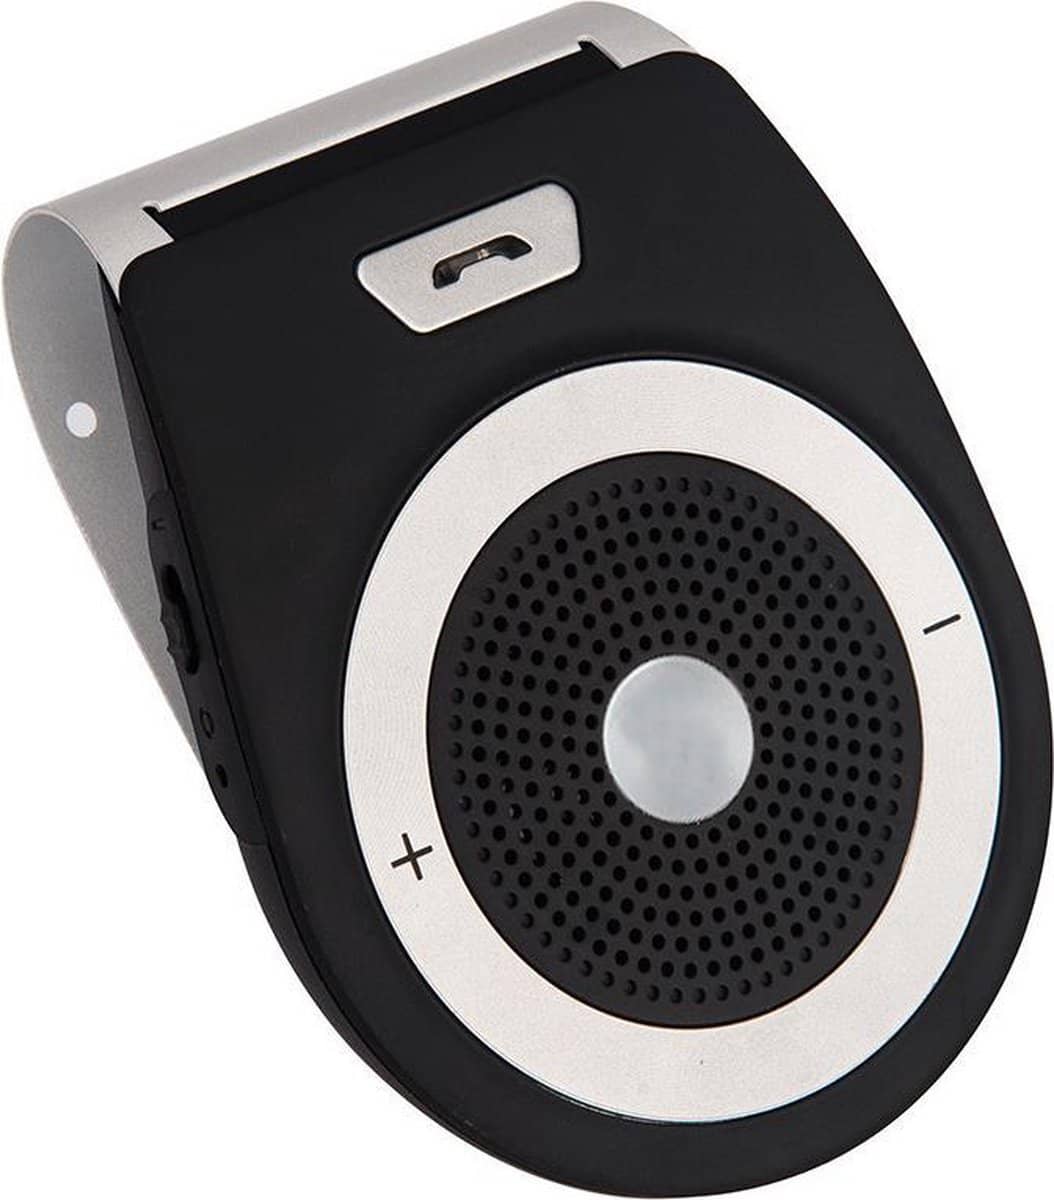 Draadloze Bluetooth Carkit met Spraakbesturing. Voor aan de zonneklep